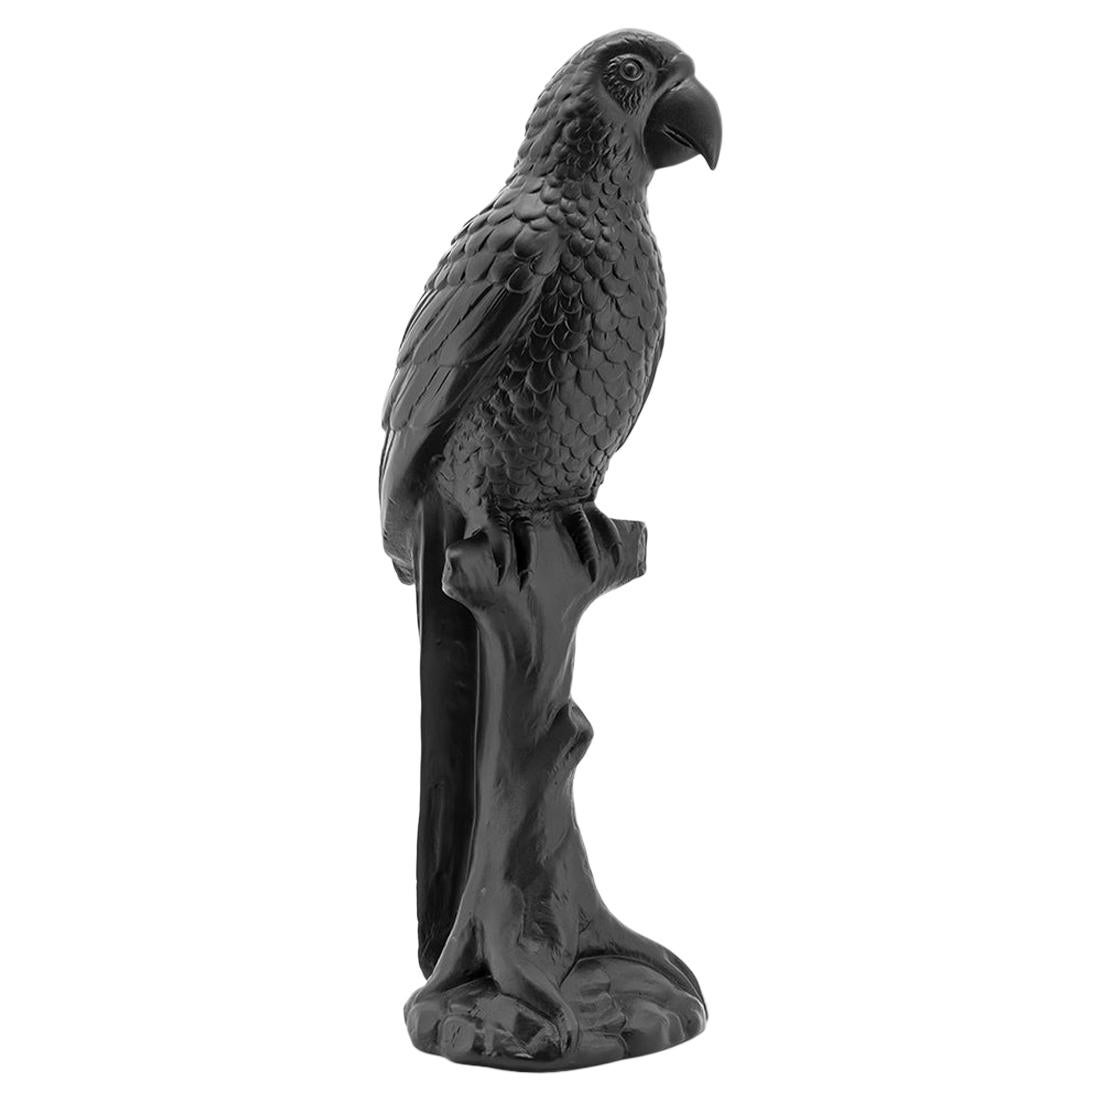 Black Parrot Sculpture For Sale